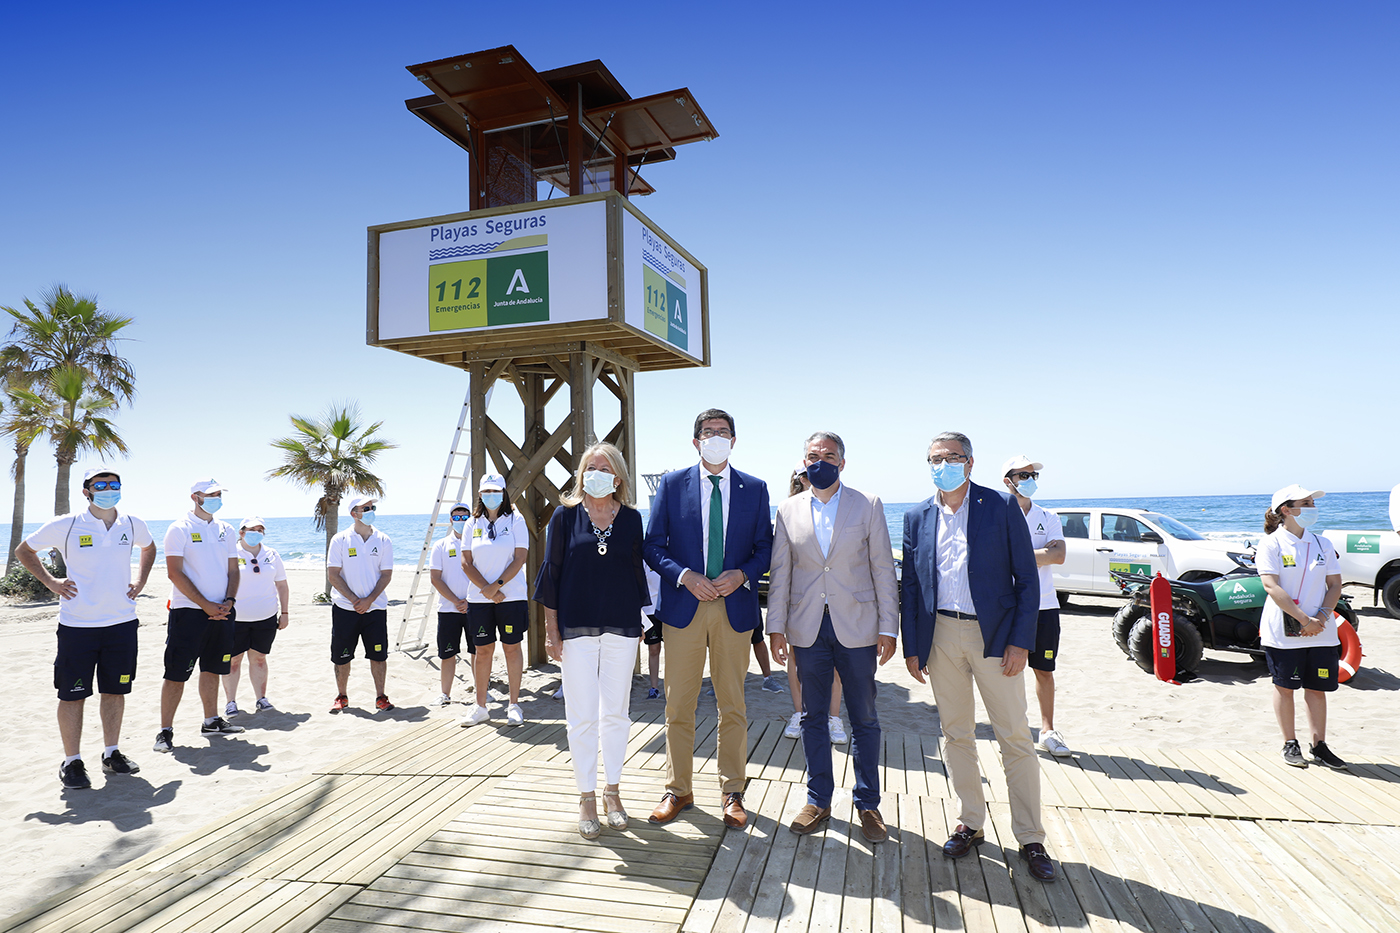 La alcaldesa destaca que el Plan Playas Seguras de la Junta, que en Marbella cuenta con 150 vigilantes, “reforzará el papel de la ciudad como gran destino turístico seguro y de calidad”